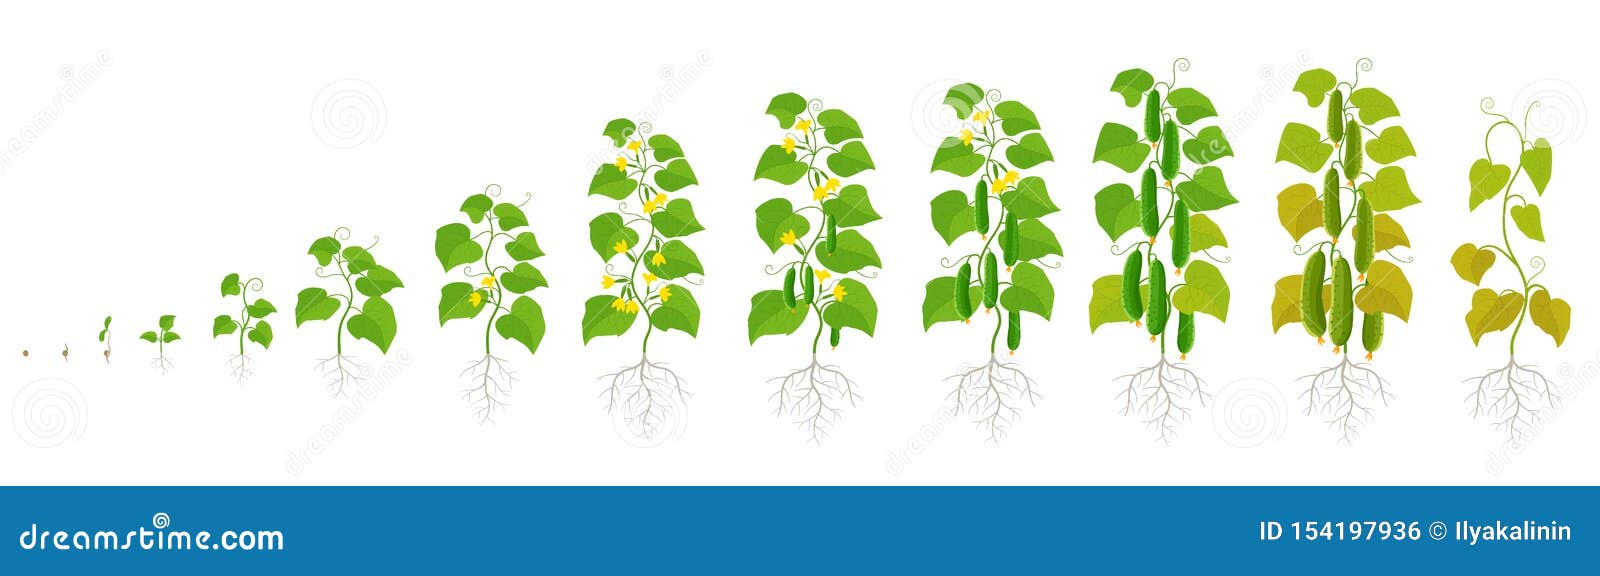 Жизненный цикл овощных растений по маркову. Этапы роста огурцов. Этапы роста и развития огурца. Жизненный цикл роста огурца. Стадии развития огурца.